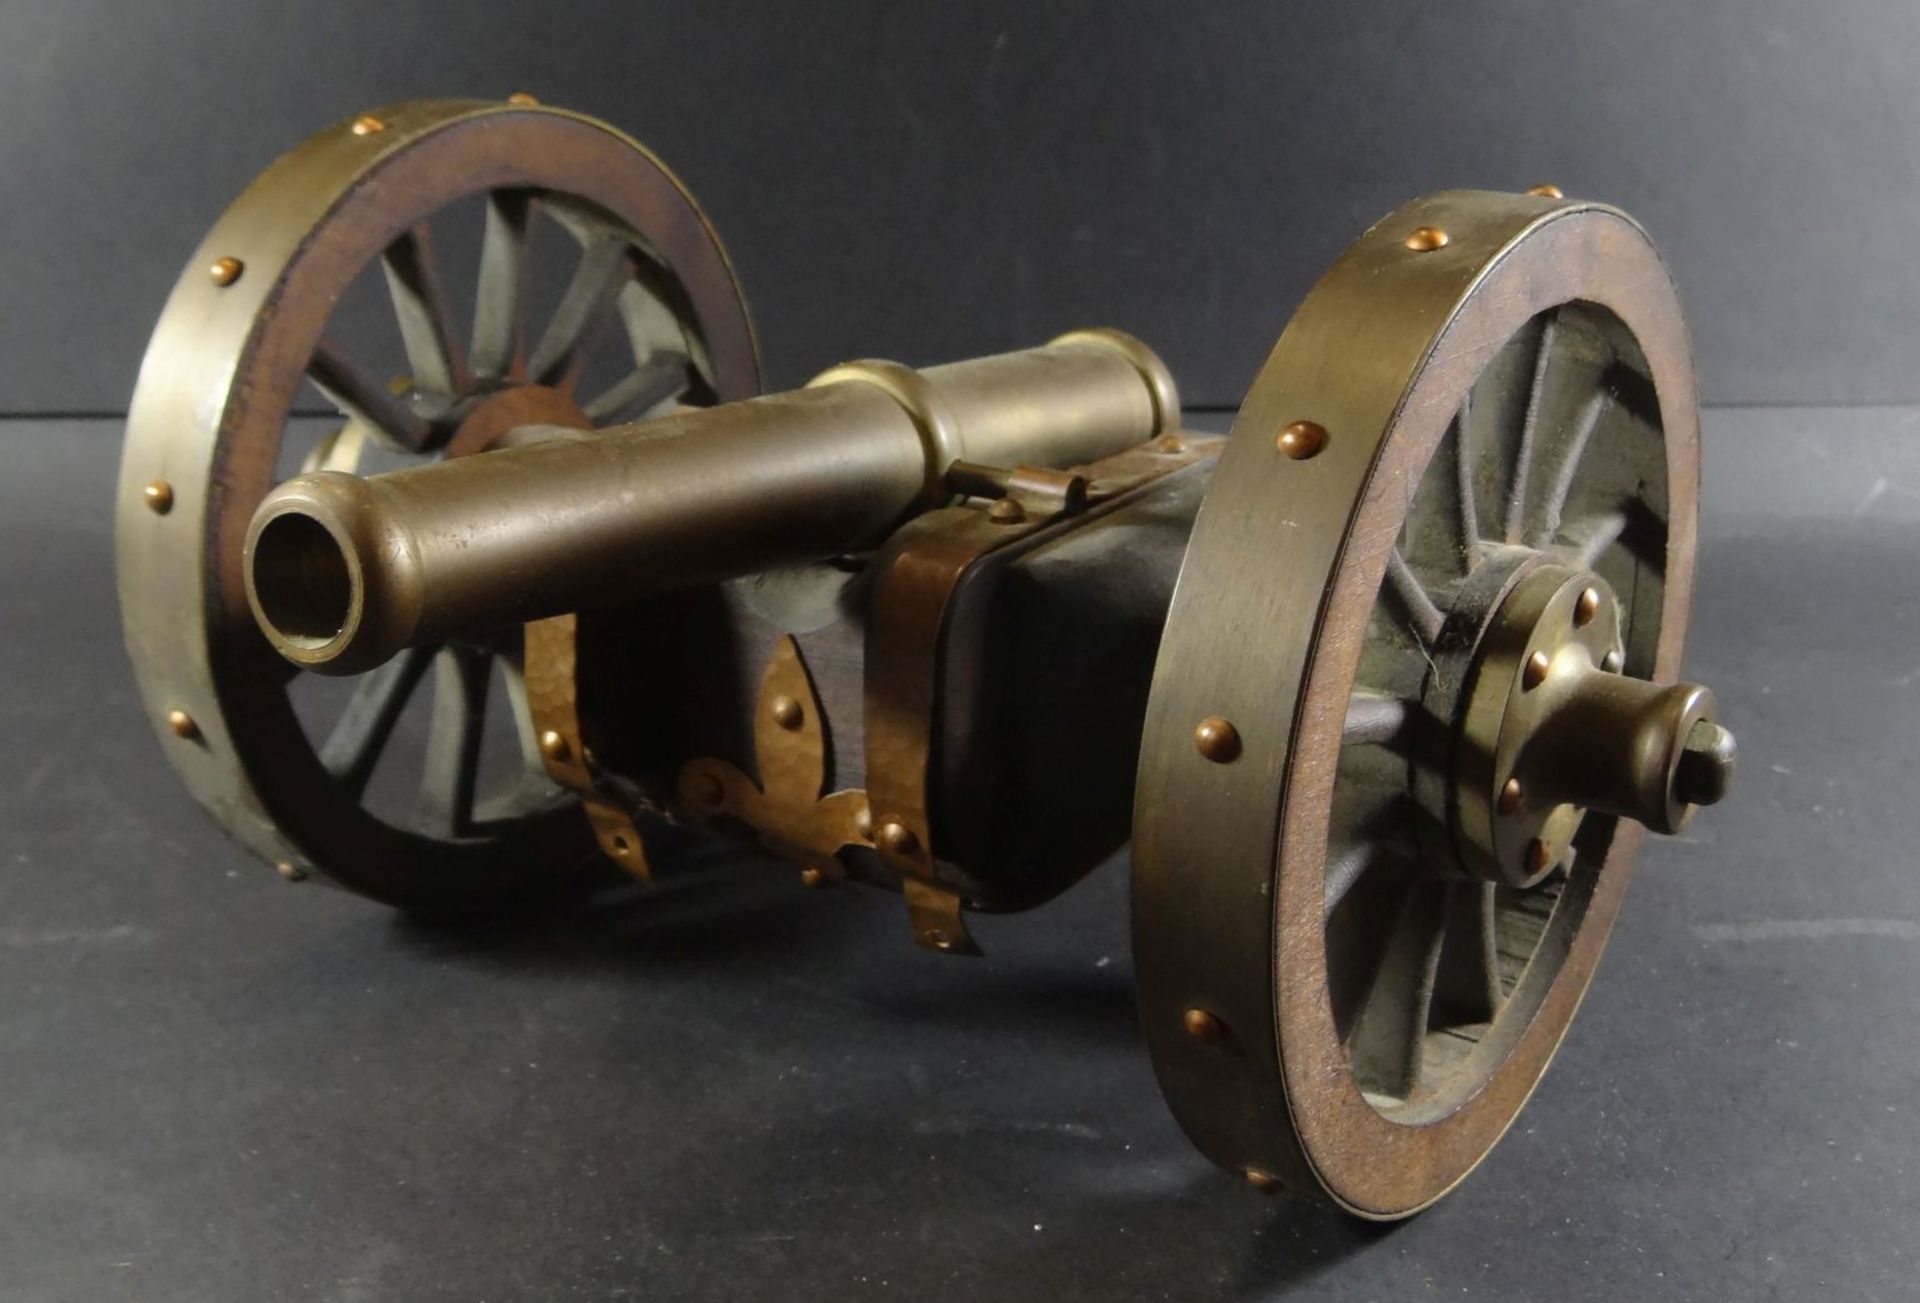 Modell einer Kanone auf Lafette, Holz/Kupfer/Messing, am rechten Rad fehlen Schrauben, H-14 cm, L-4